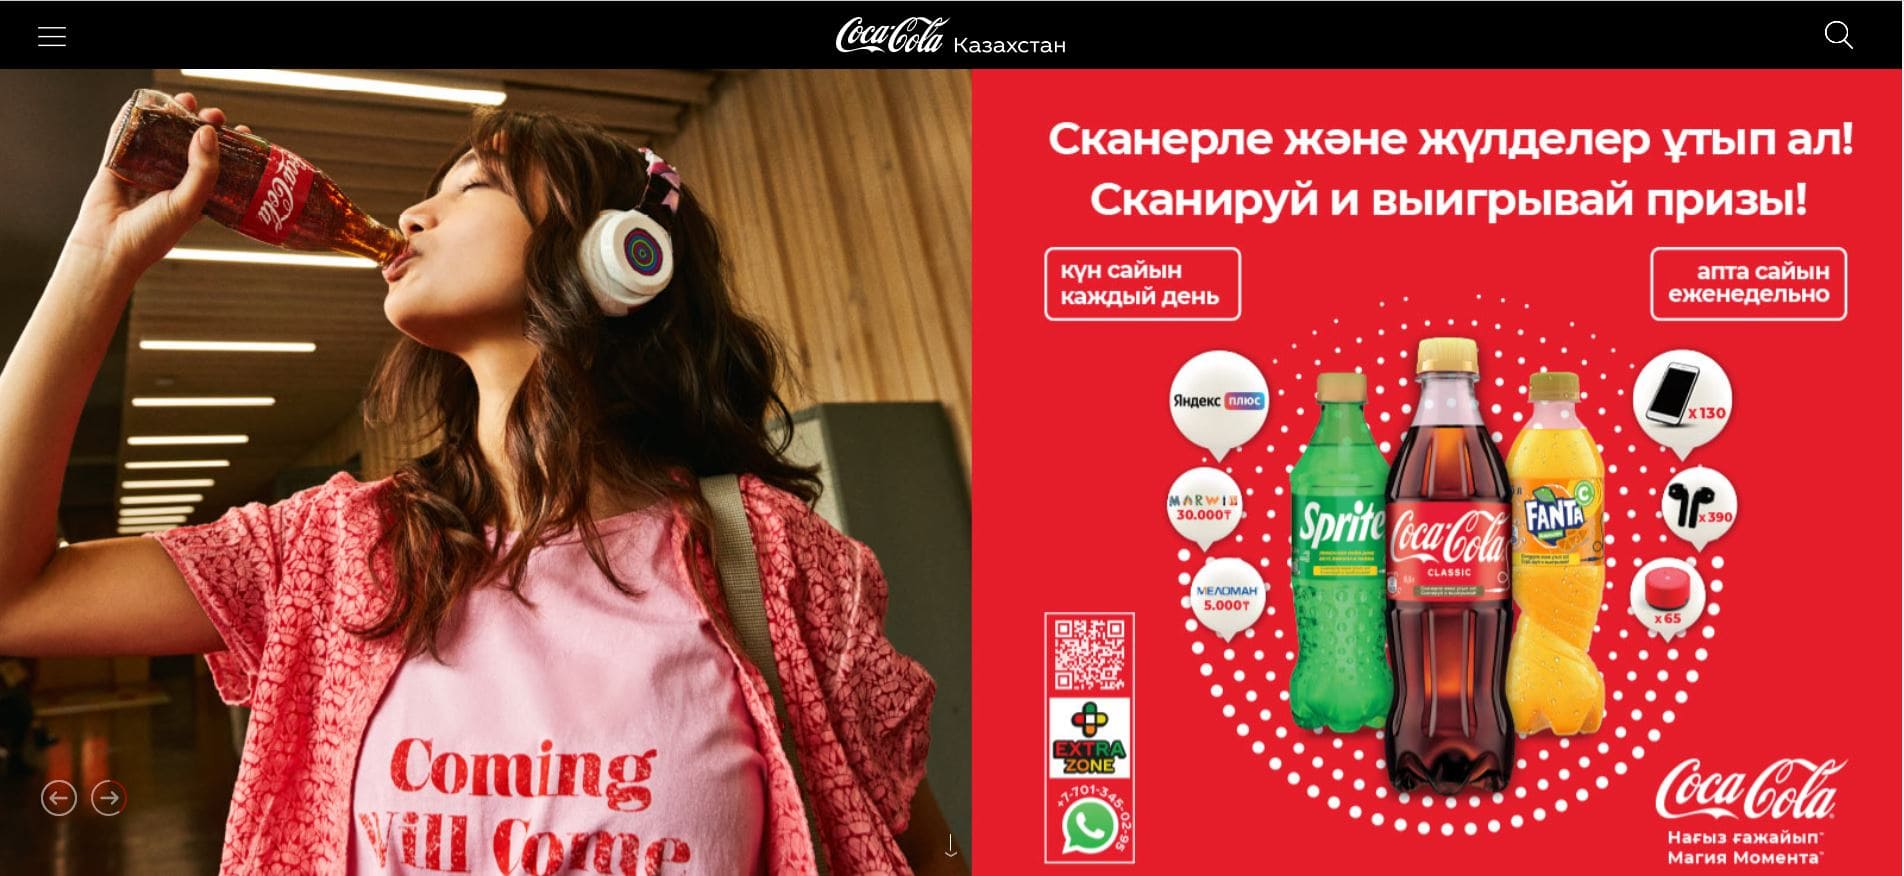 Coca‑Cola в Казахстане (coca-cola.kz) – официальный сайт